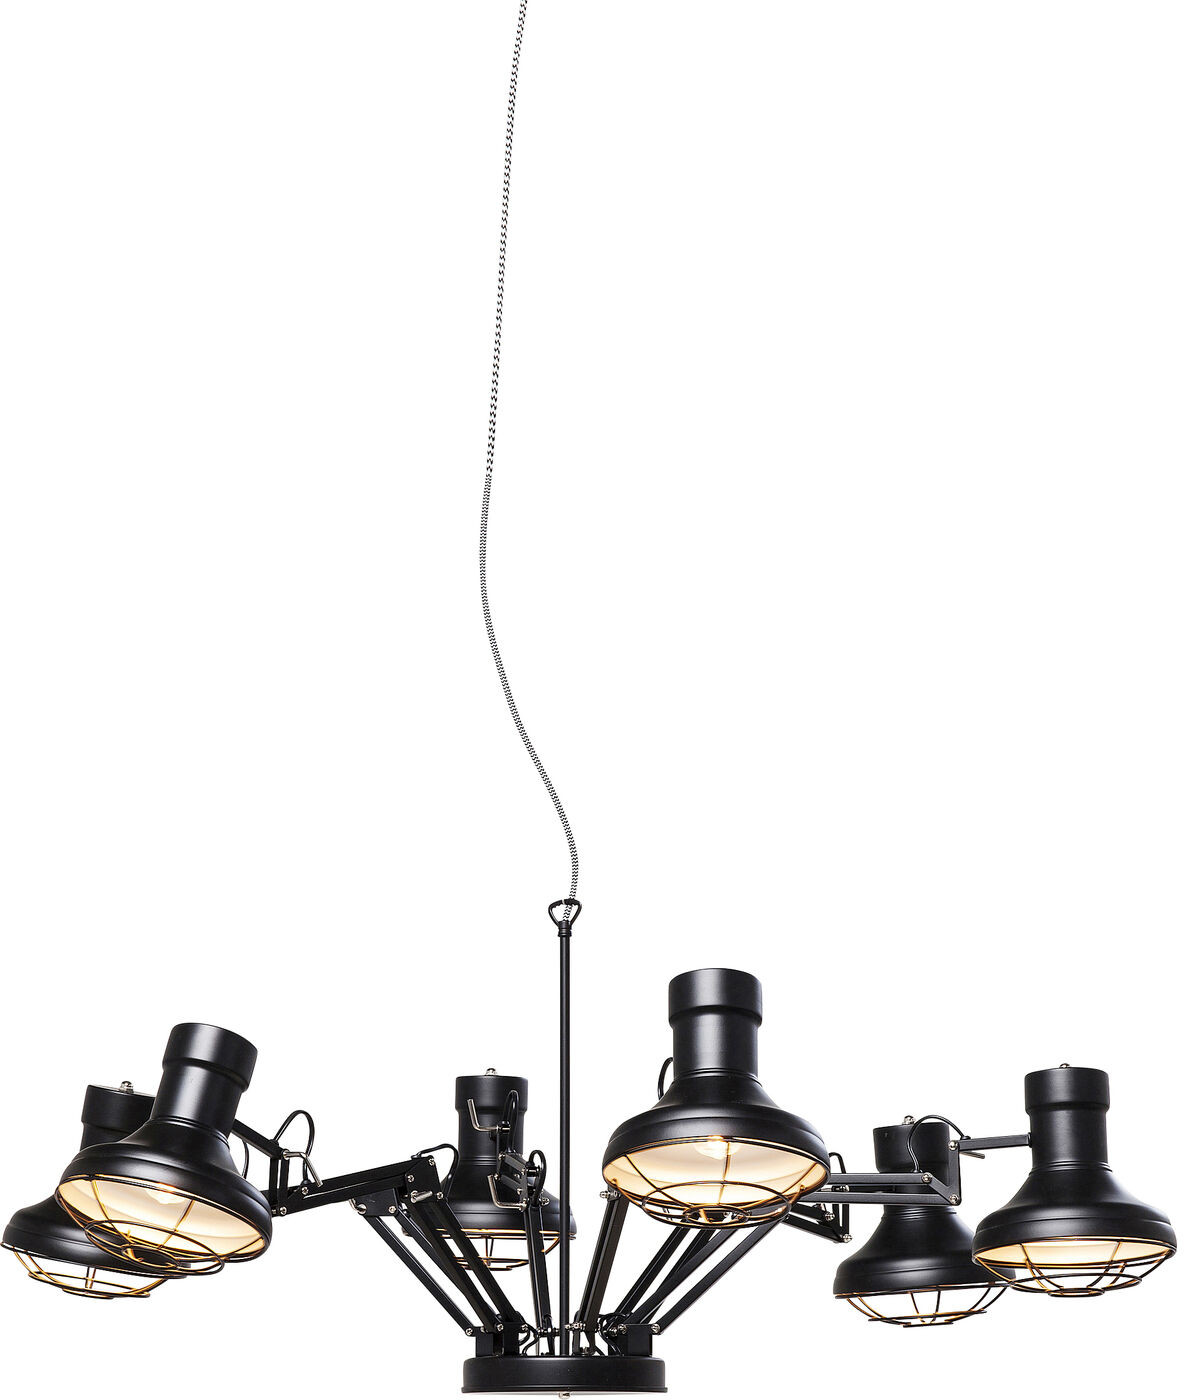 Hanglamp Spider Multi 6-lite Kare Design Hanglamp 36595